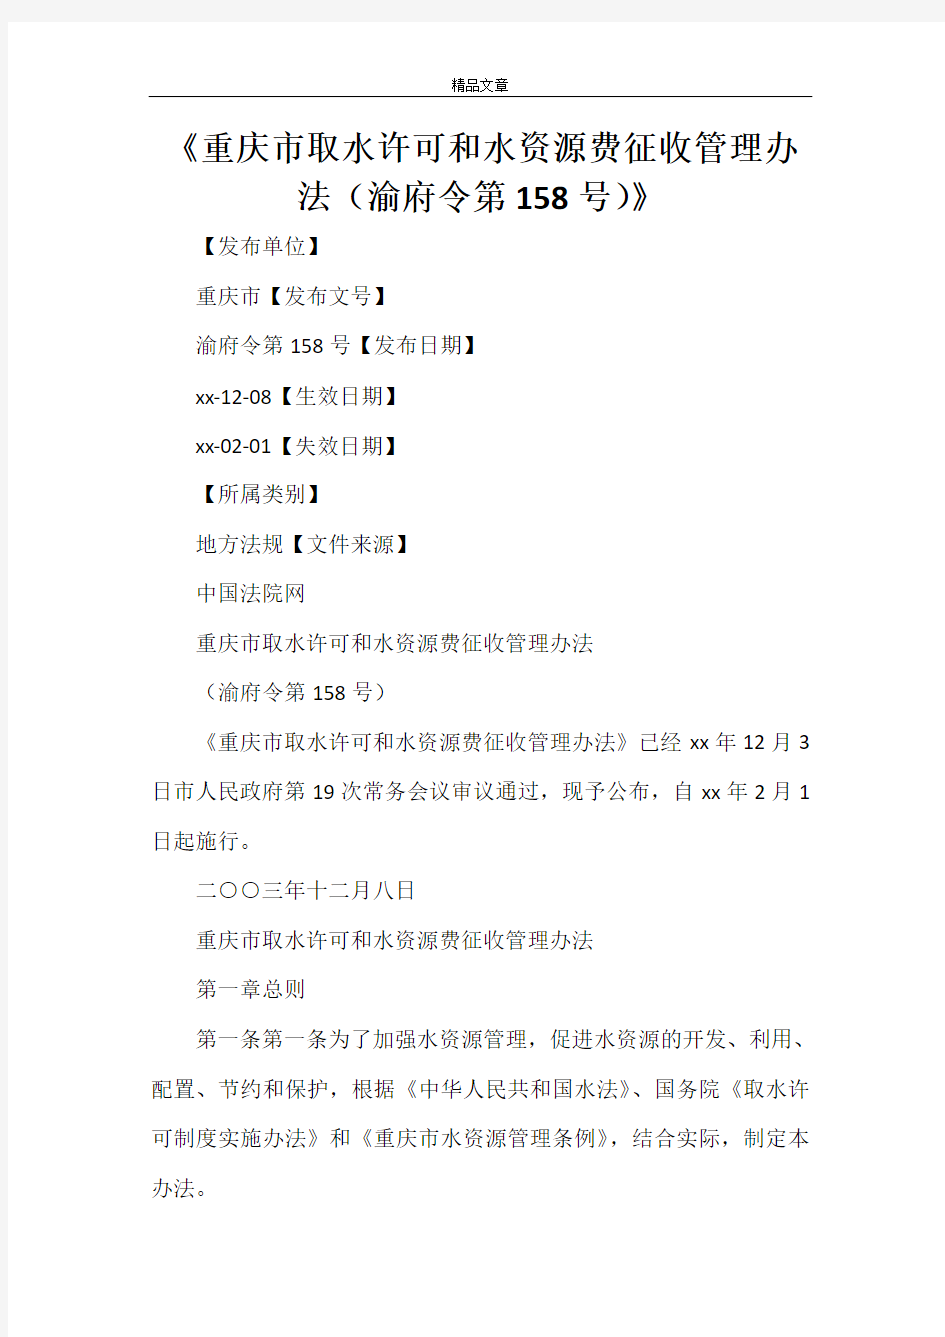 《重庆市取水许可和水资源费征收管理办法(渝府令第158号)》